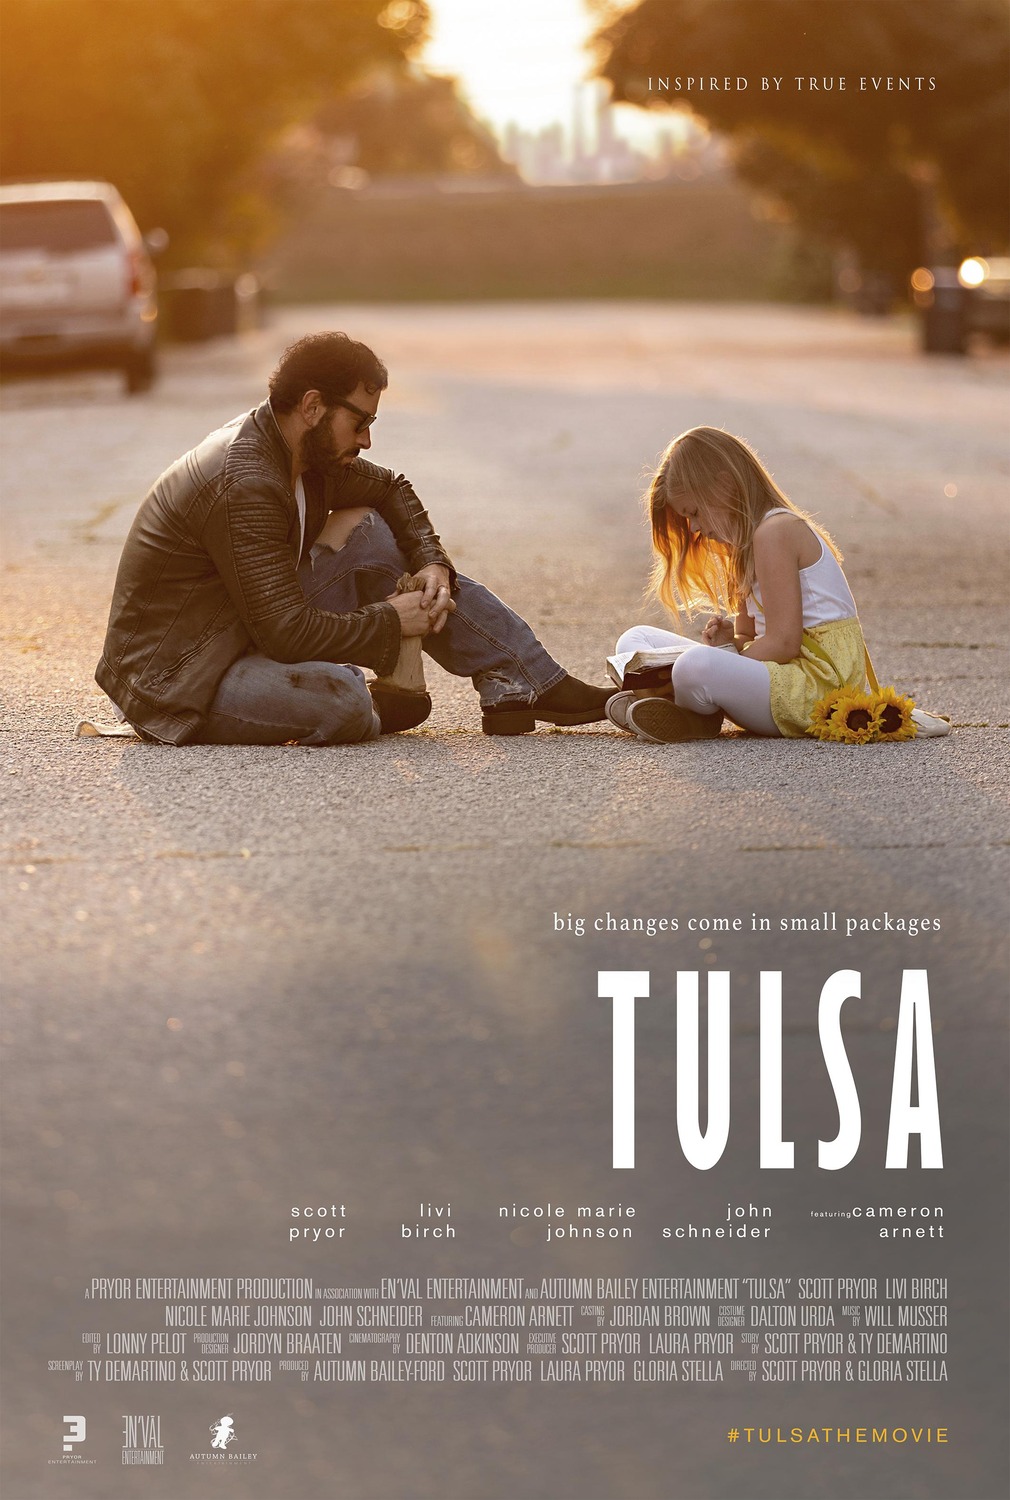 Tulsa : Extra Large Movie Poster Image - IMP Awards